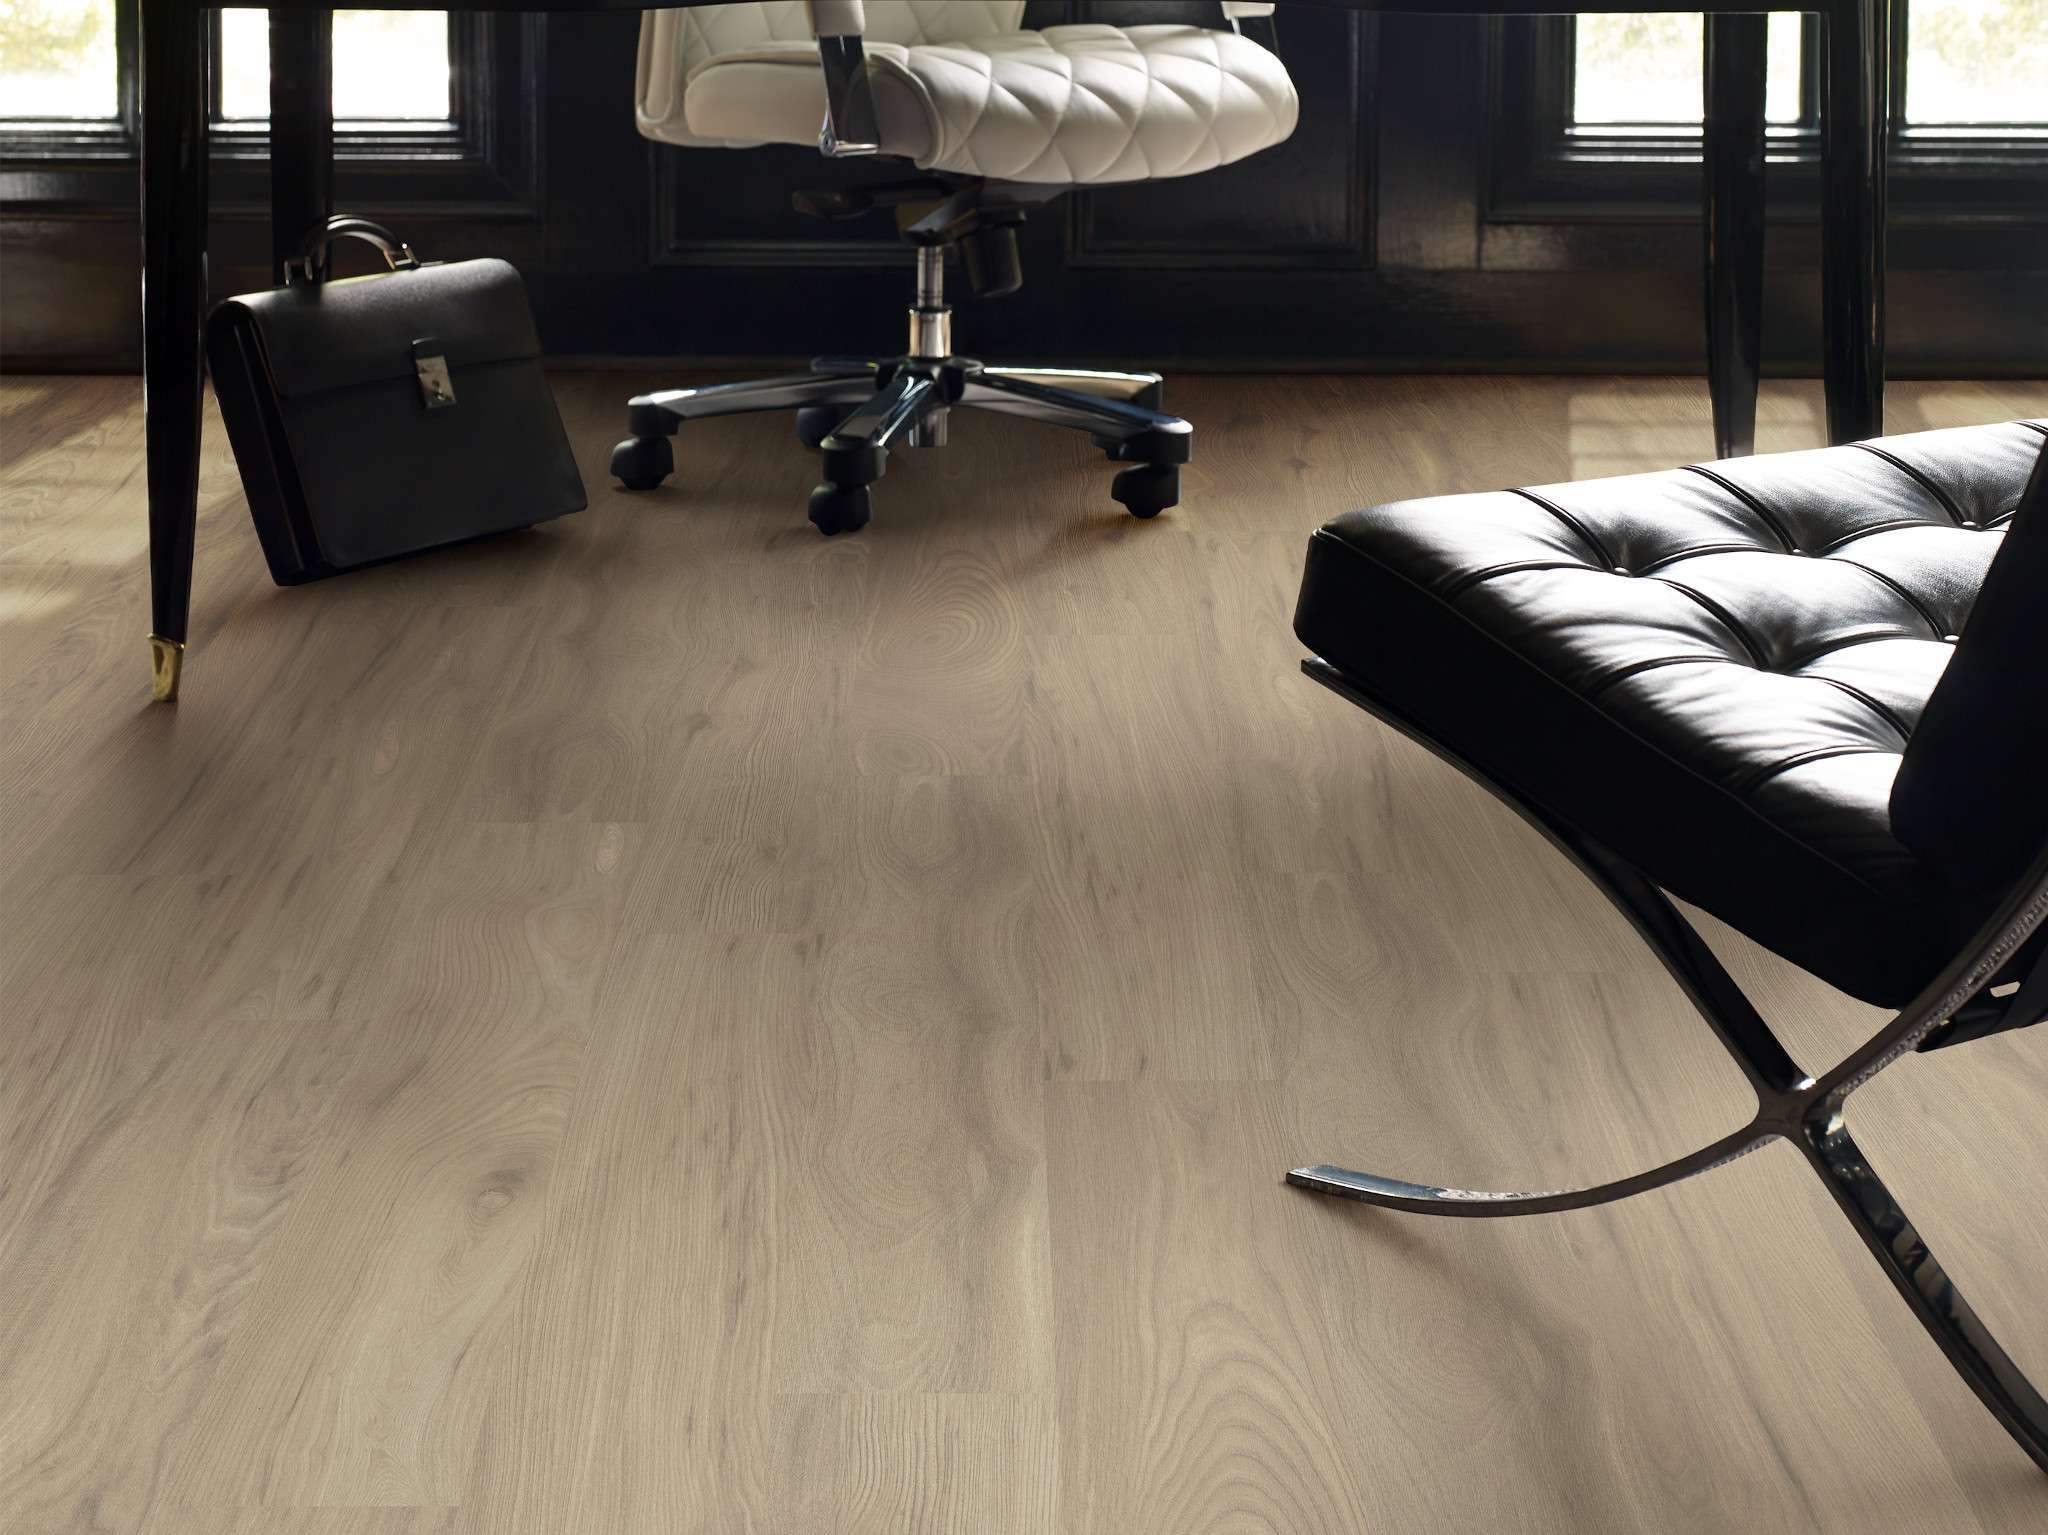 Simplicity Plus Sl442 Landing Laminates, Shaw Carpet Hardwood Laminate Flooring